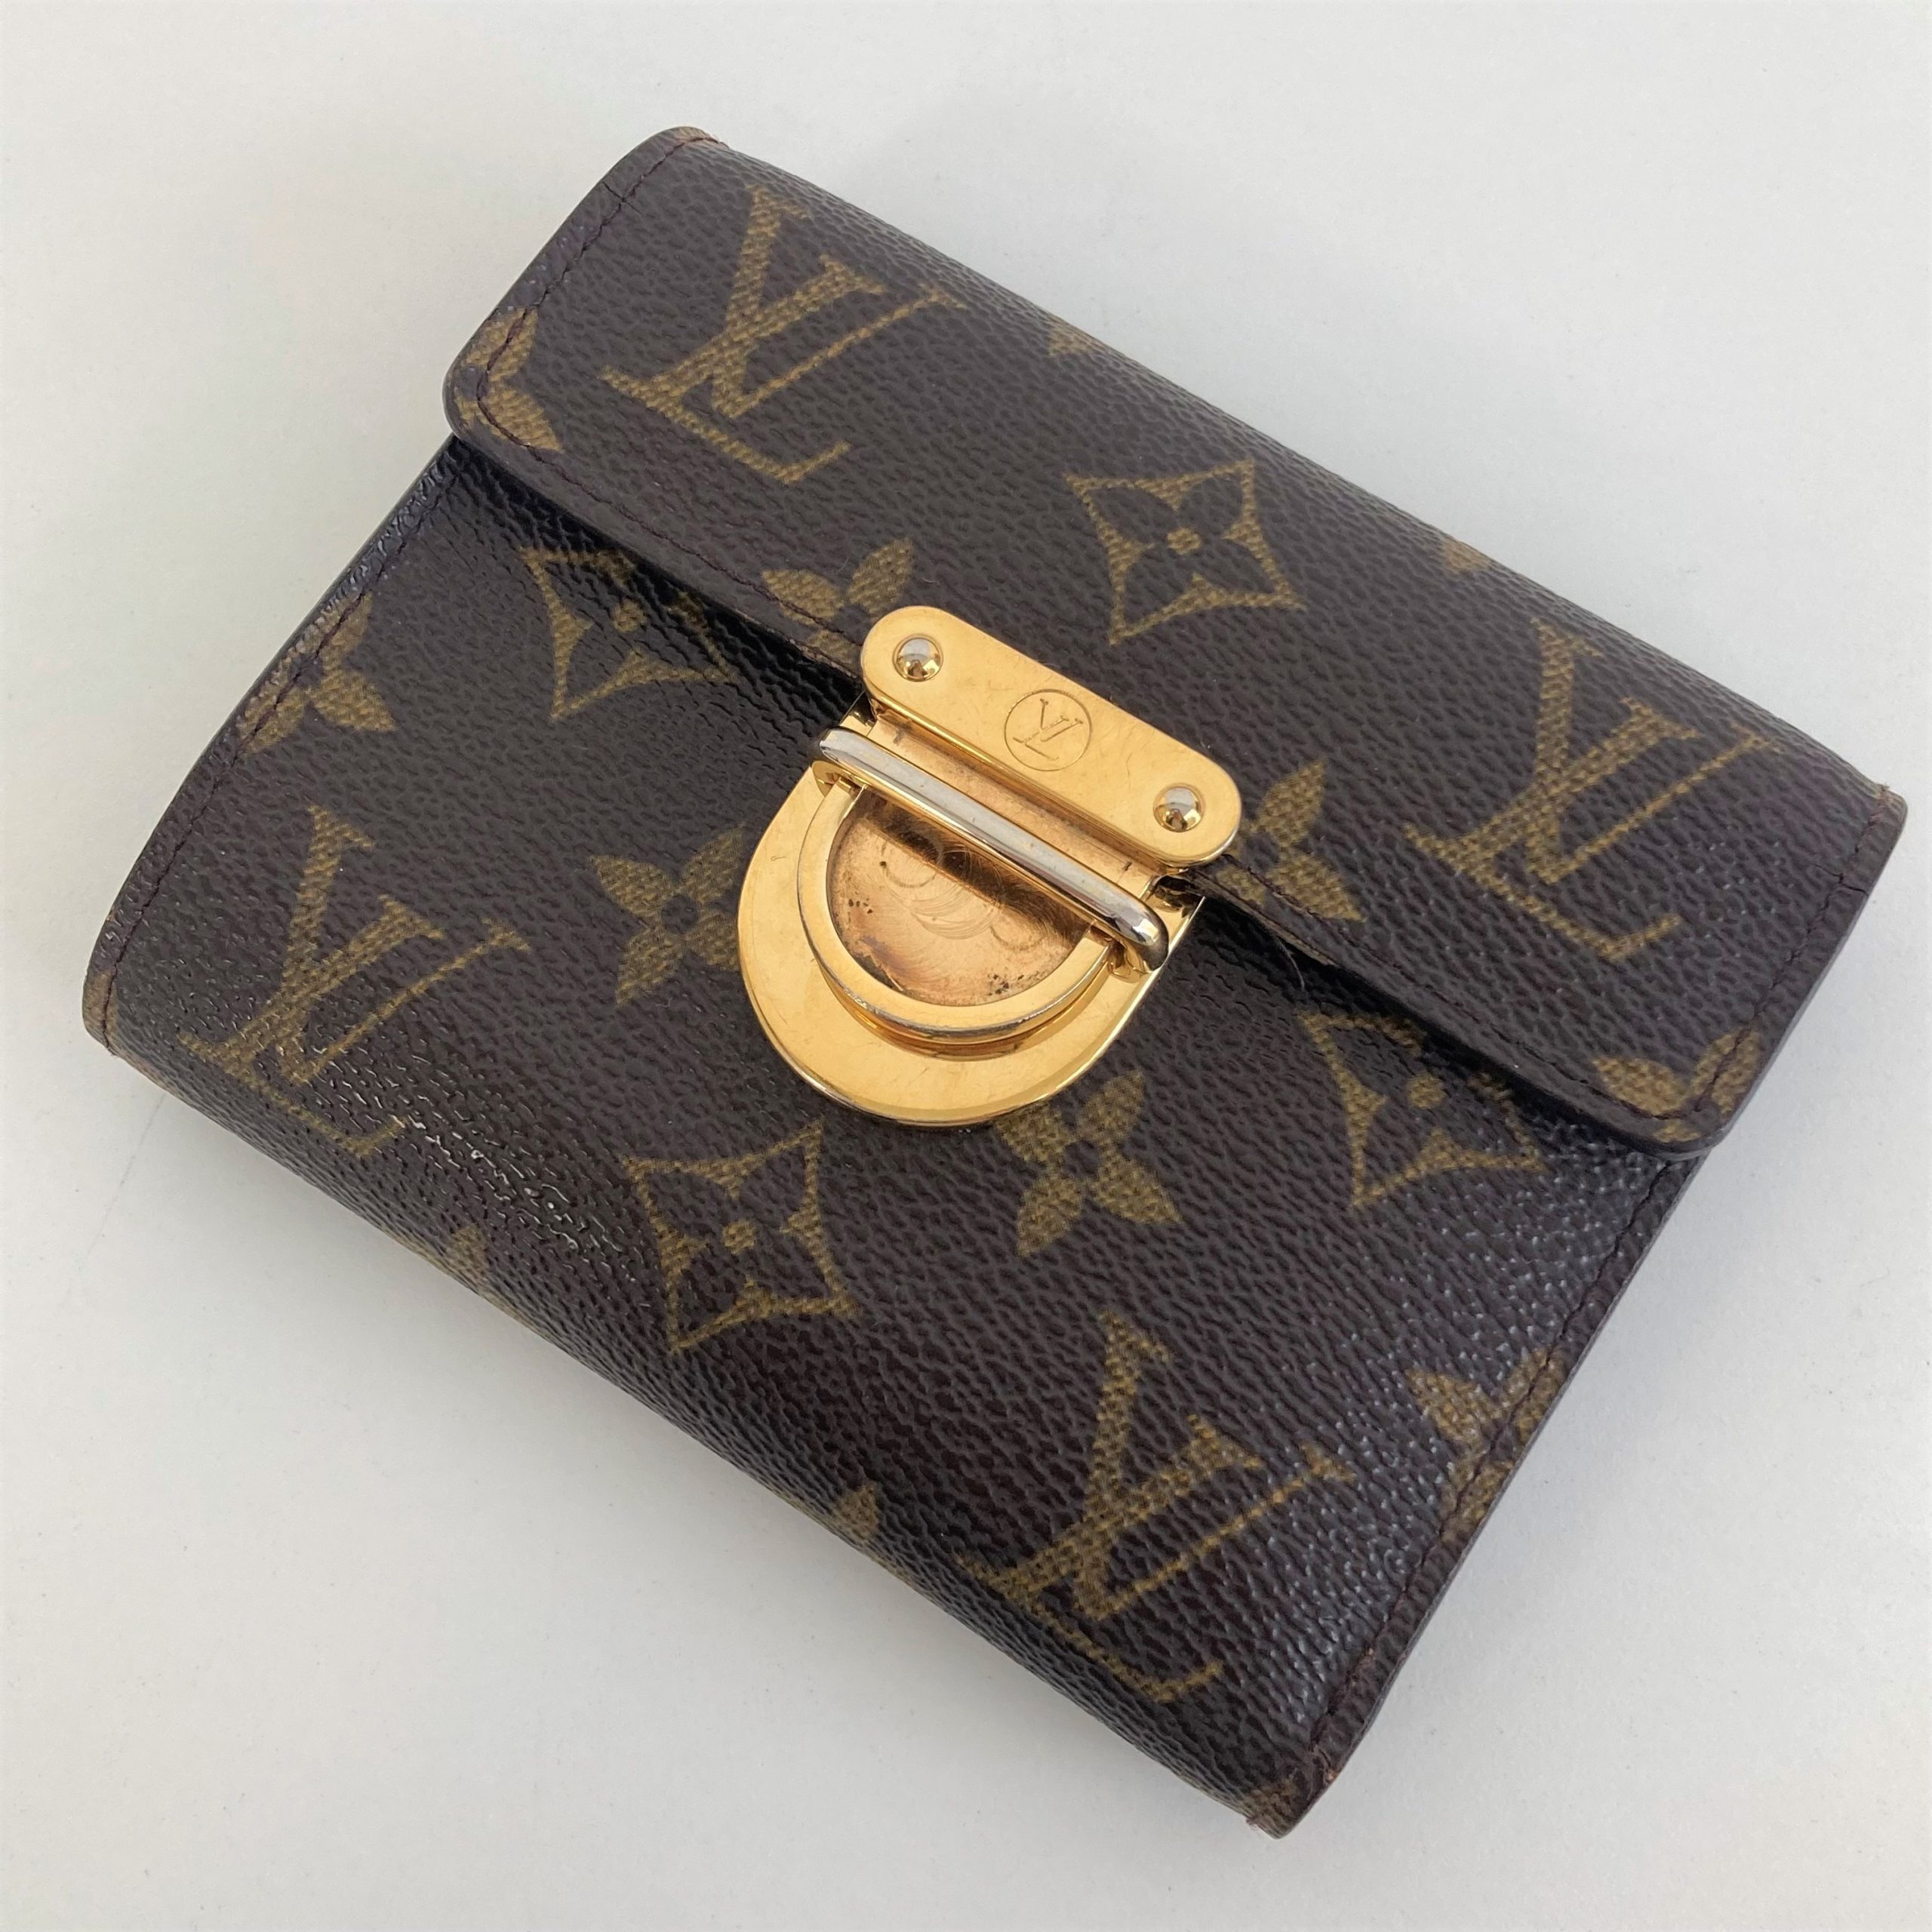 【Louis Vuitton/ルイ ヴィトン】モノグラム ポルトフォイユ コアラ M58013 三つ折り財布